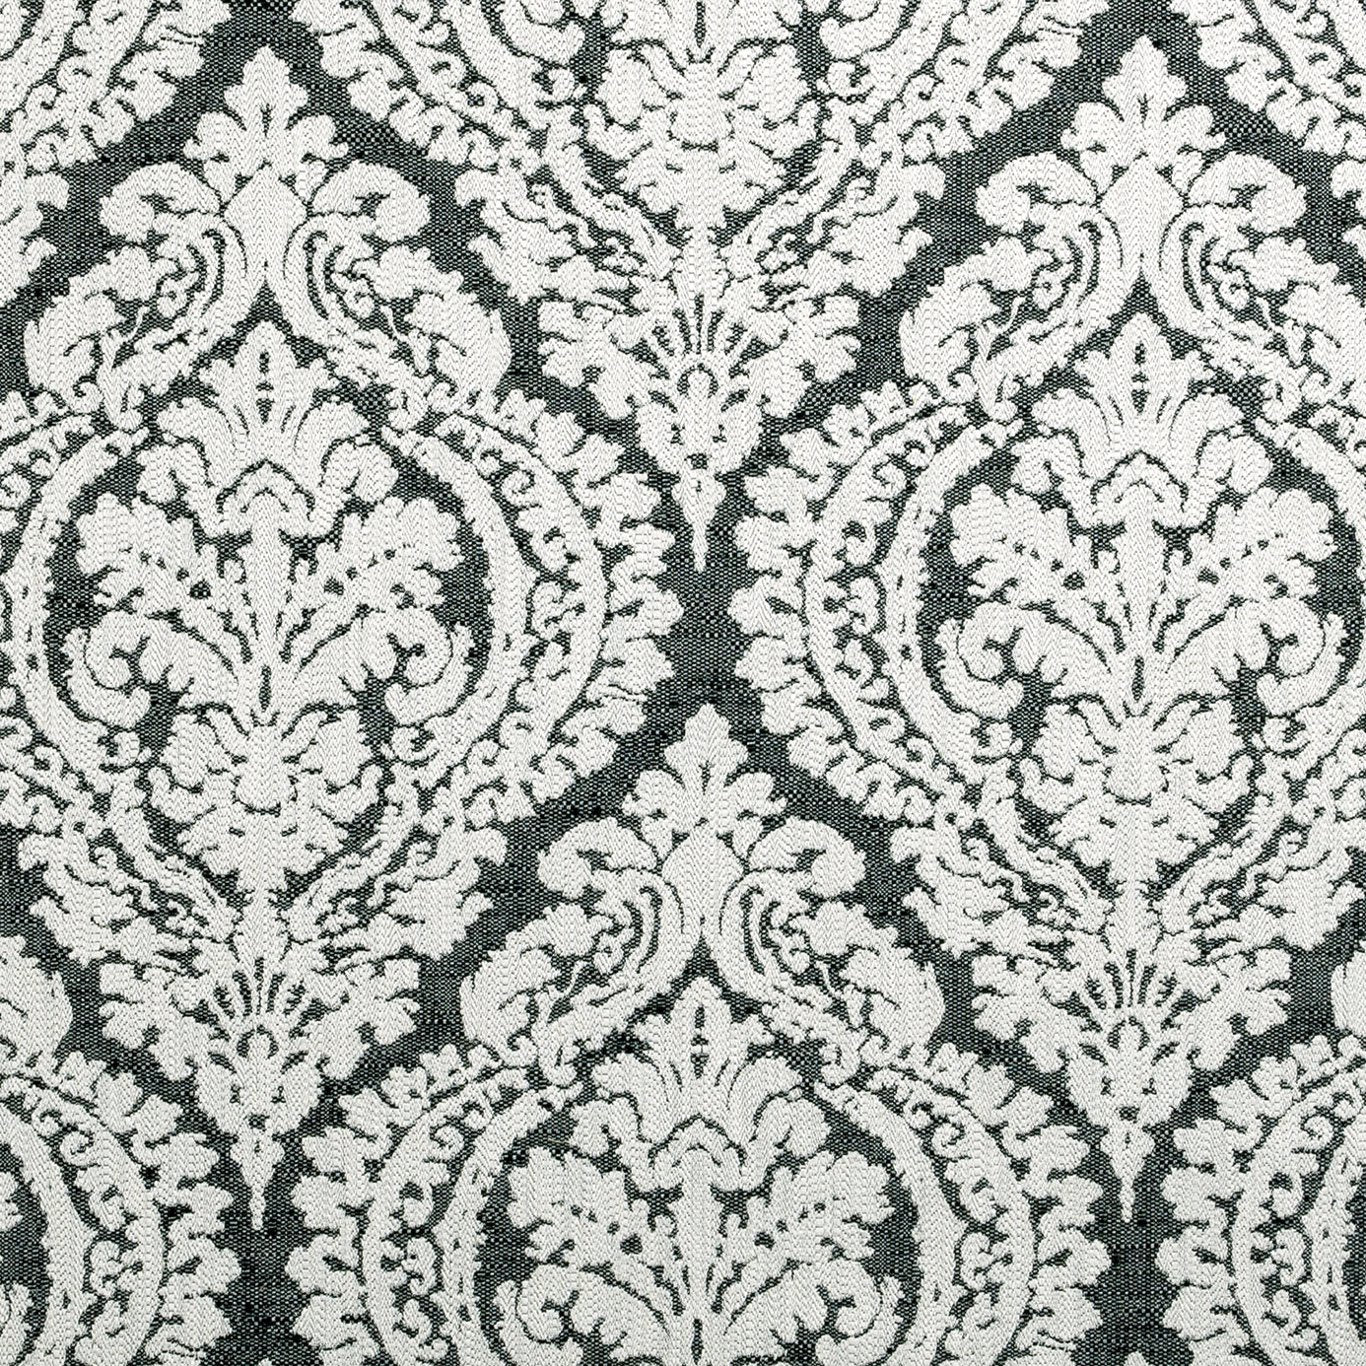 Bw1004 Fabric by Clarke & Clarke - F0876/01 - Black/White